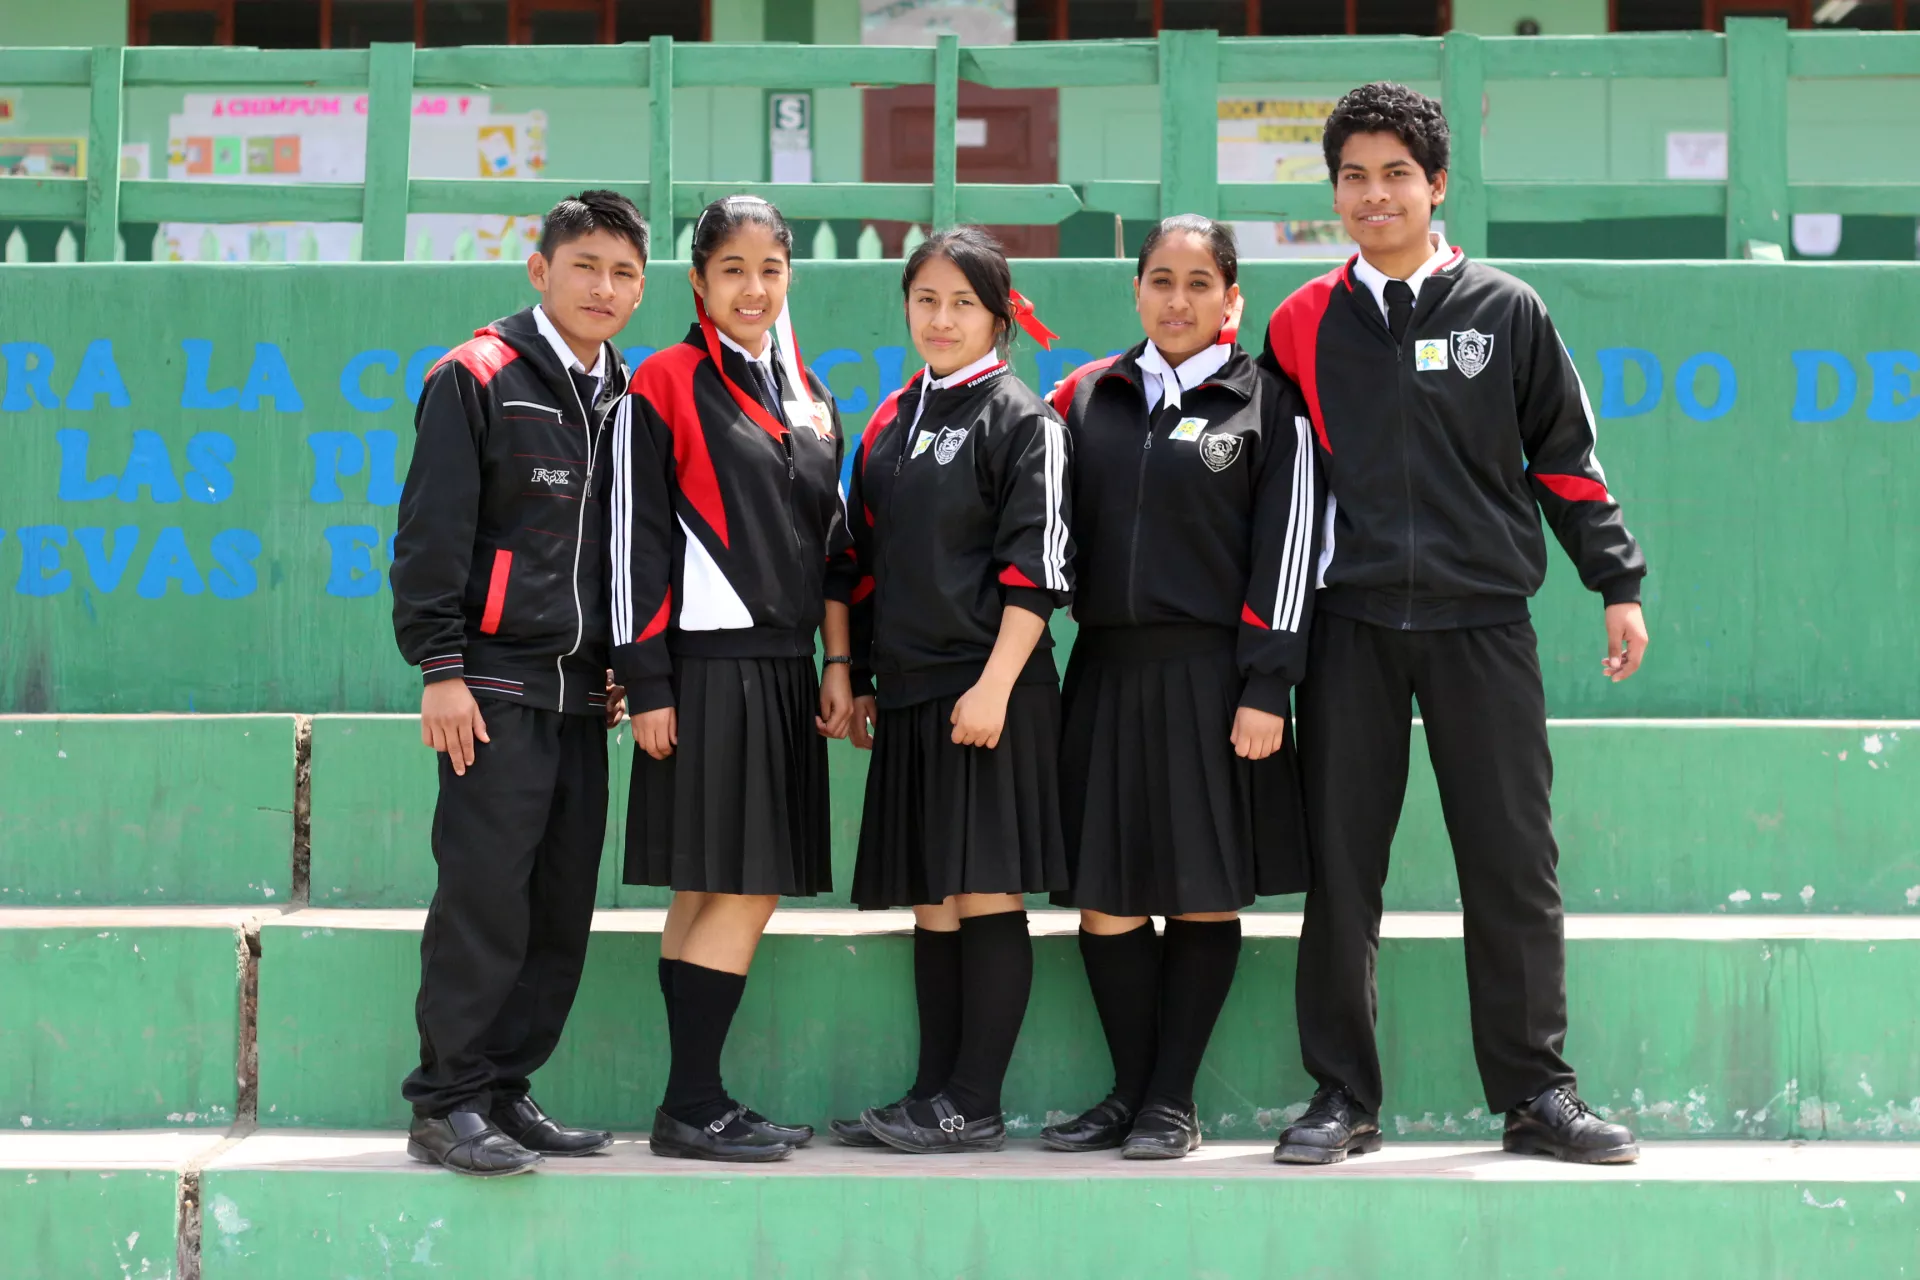 Un grupo de adolescentes de pie dentro de su escuela.